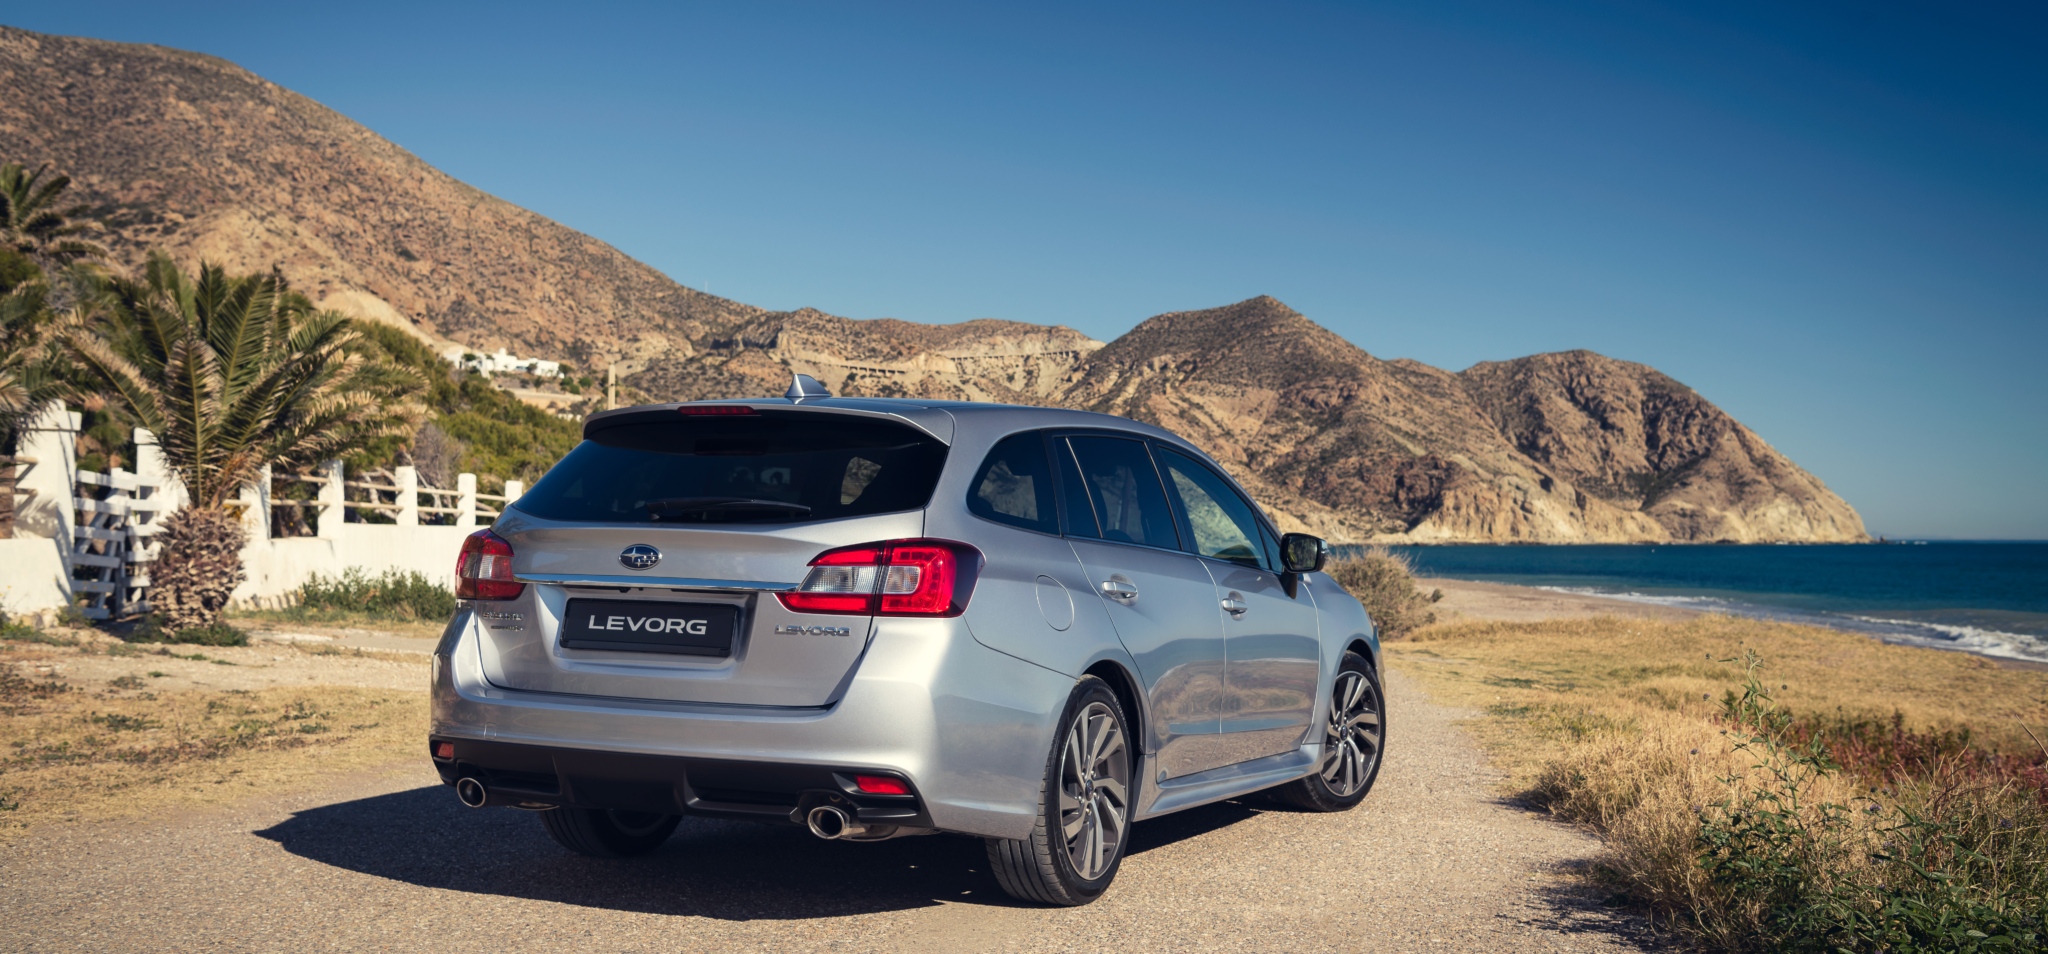 Subaru Levorg 2019 exterior 4 - Subaru Levorg 2019: Ahora más equipado y confortable